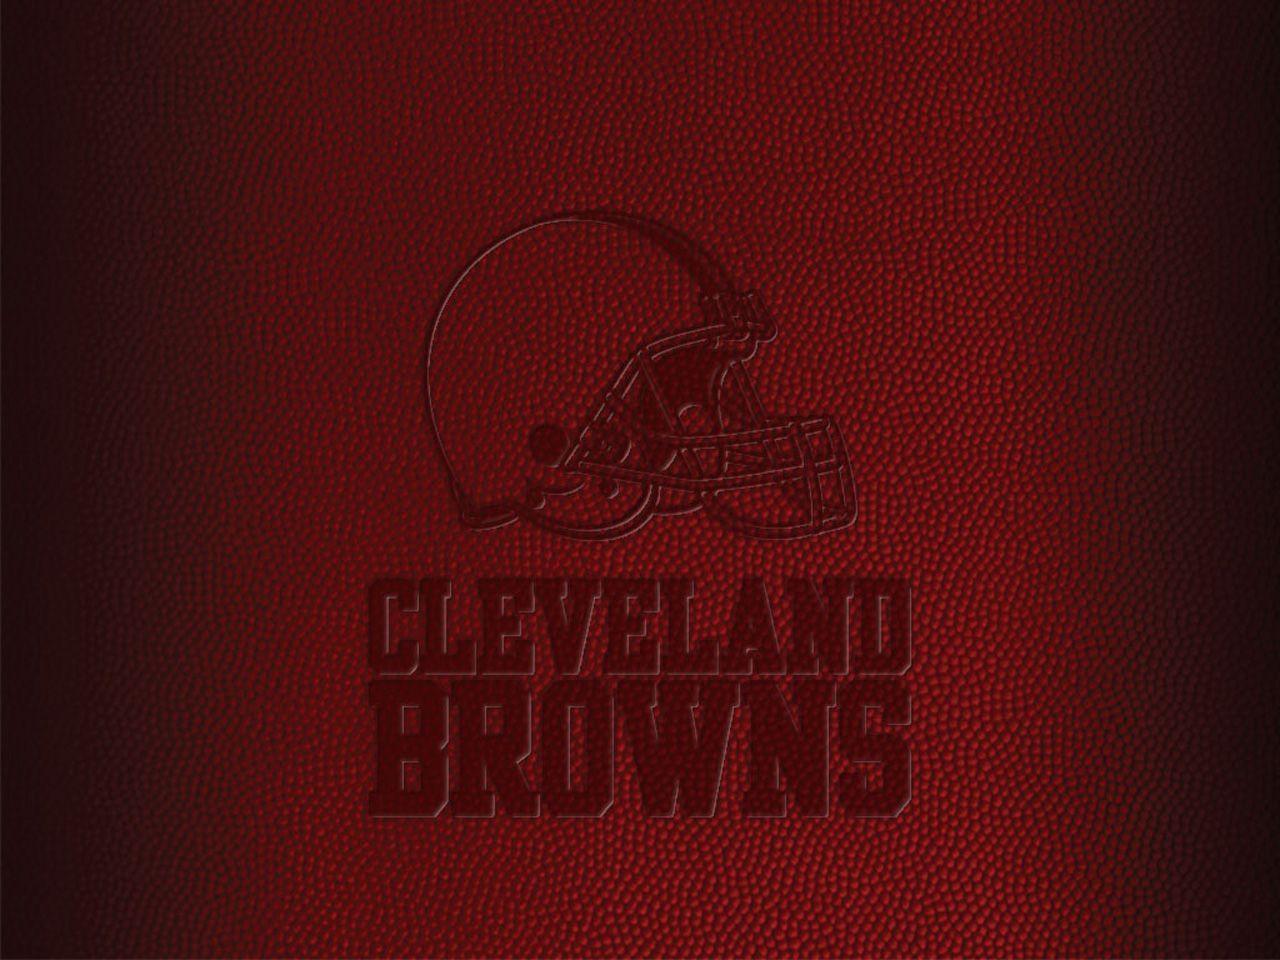 Cleveland Browns Logo NFL Football Team Wallpaper